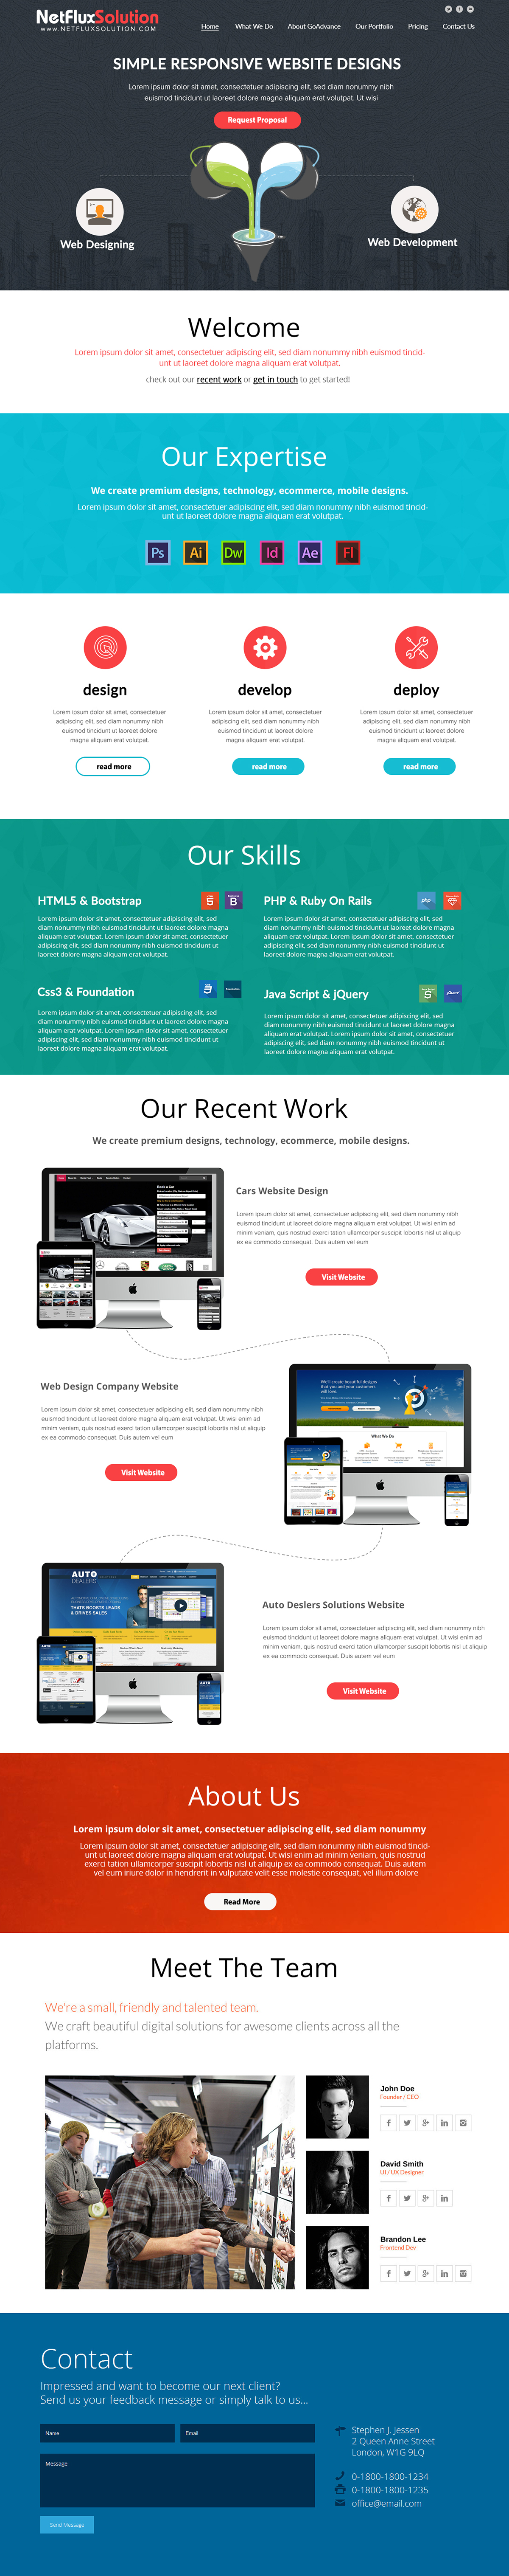 portoflio design Webdesign Layout Design Prototype Design Website Design